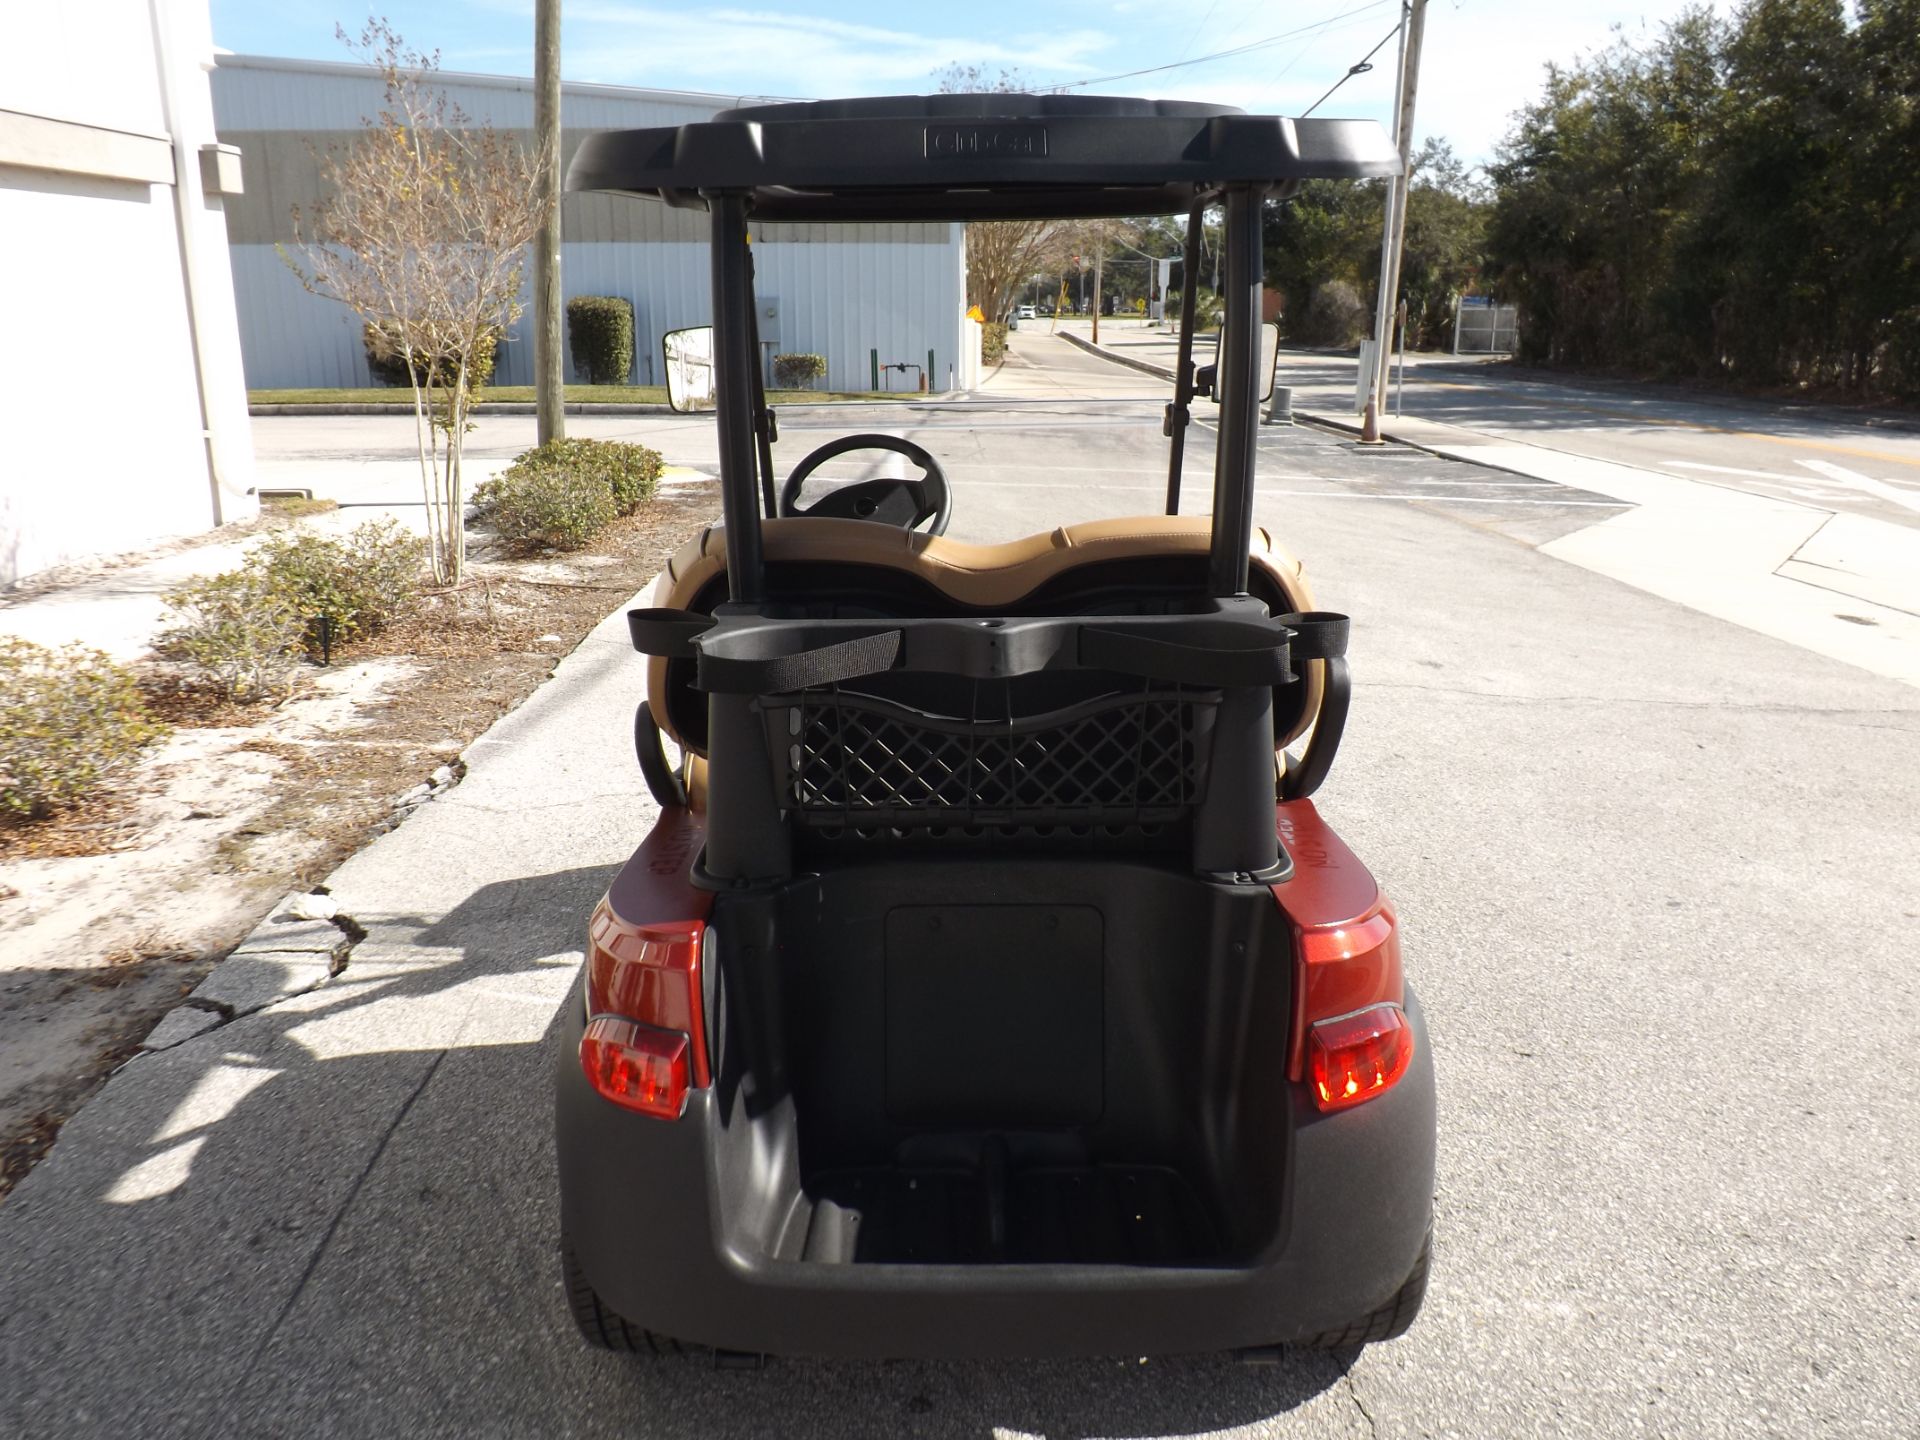 2022 Club Car Onward 2 Passenger Electric in Lakeland, Florida - Photo 4